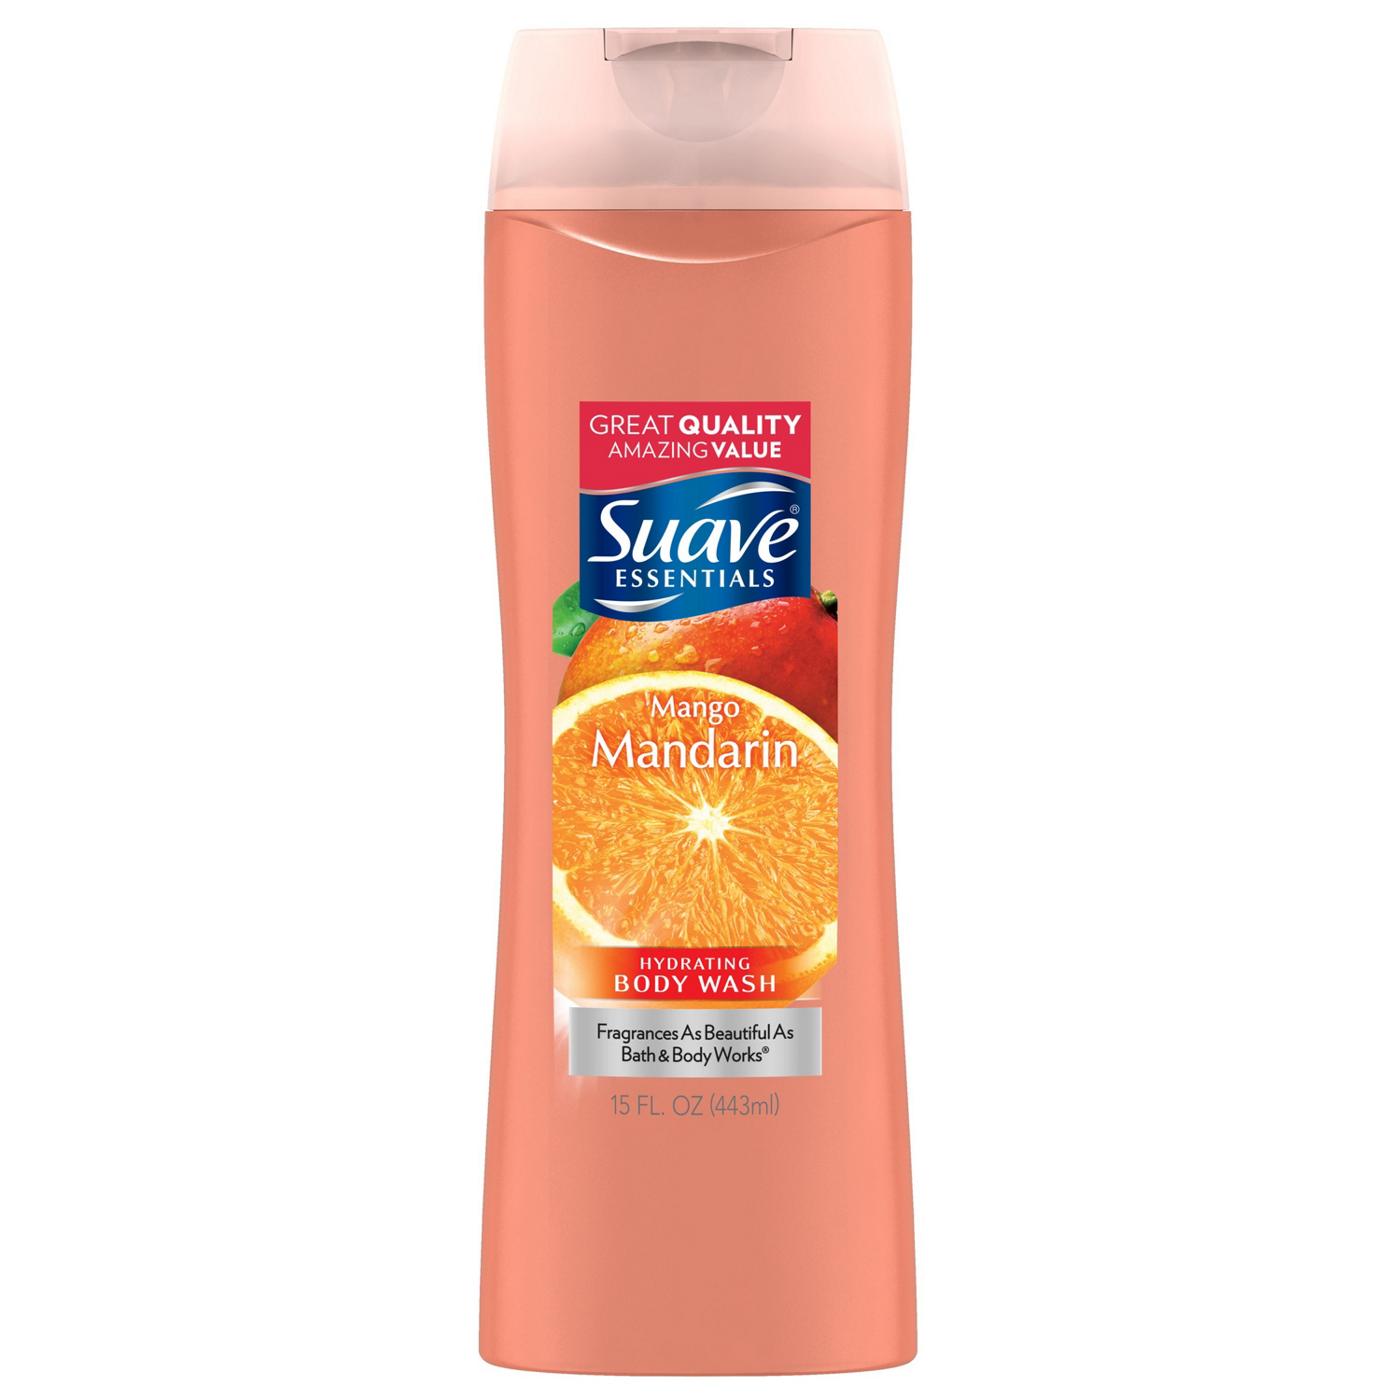 Suave Essentials Mango Mandarin Body Wash; image 1 of 4